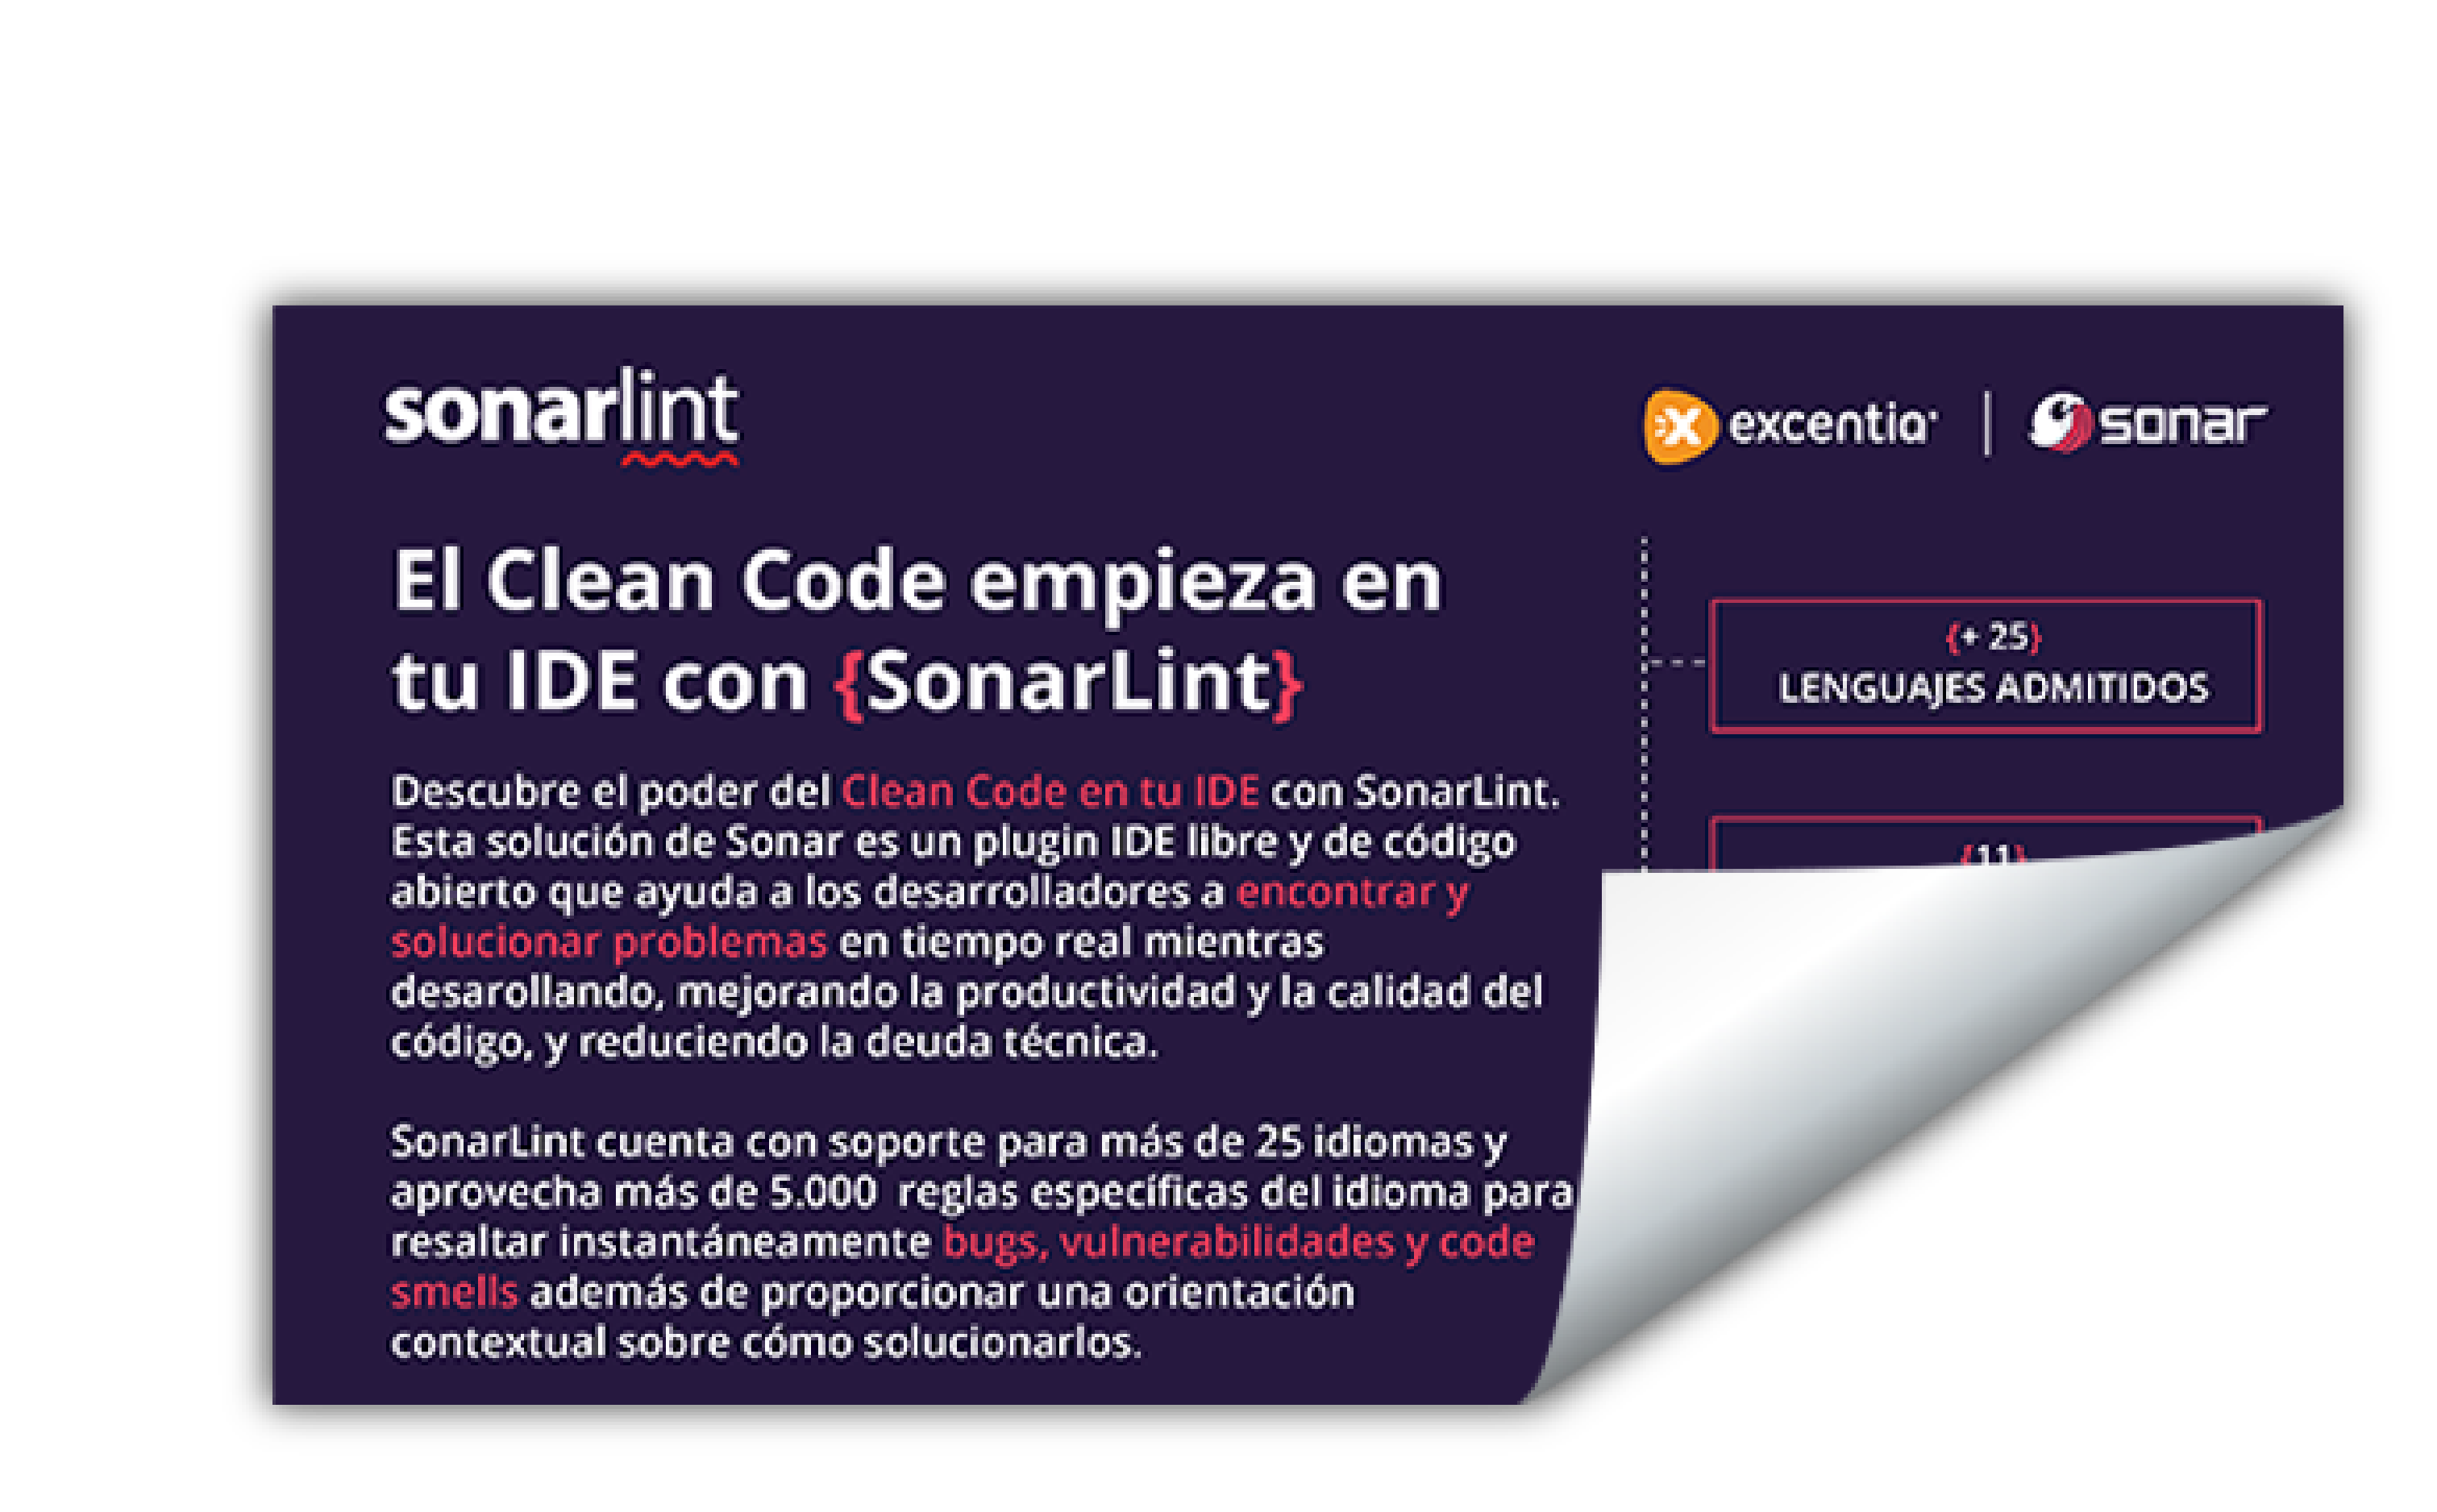 excentia es Partner exclusivo de SonarSource en España y Latinoamérica